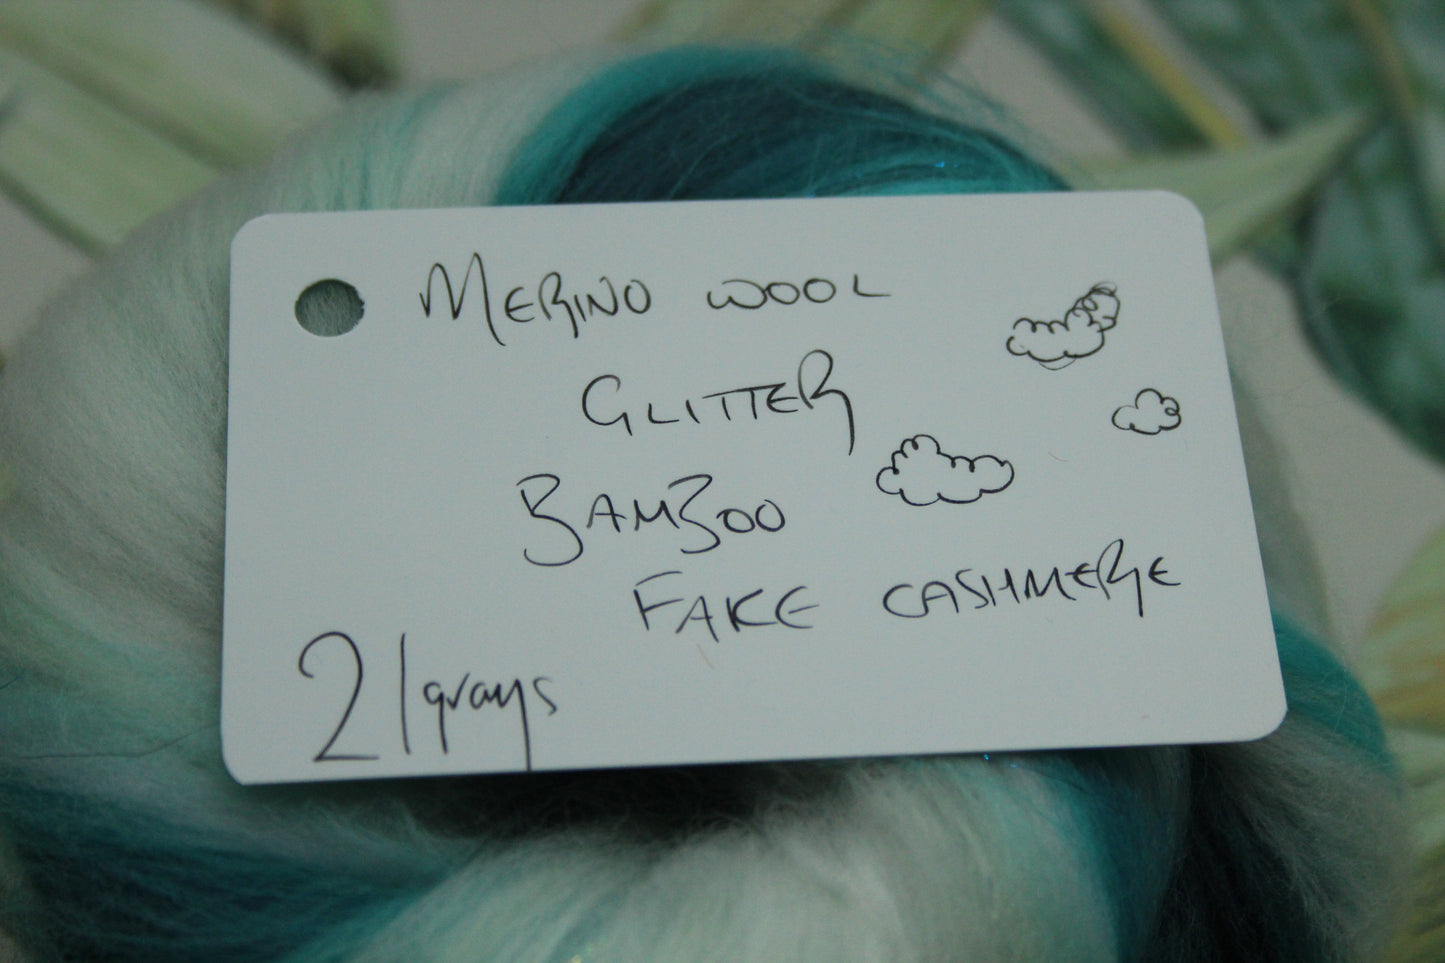 Wool Blend - Turquoise White - 21 grams / 0.7 oz  - Fibre for felting, weaving or spinning